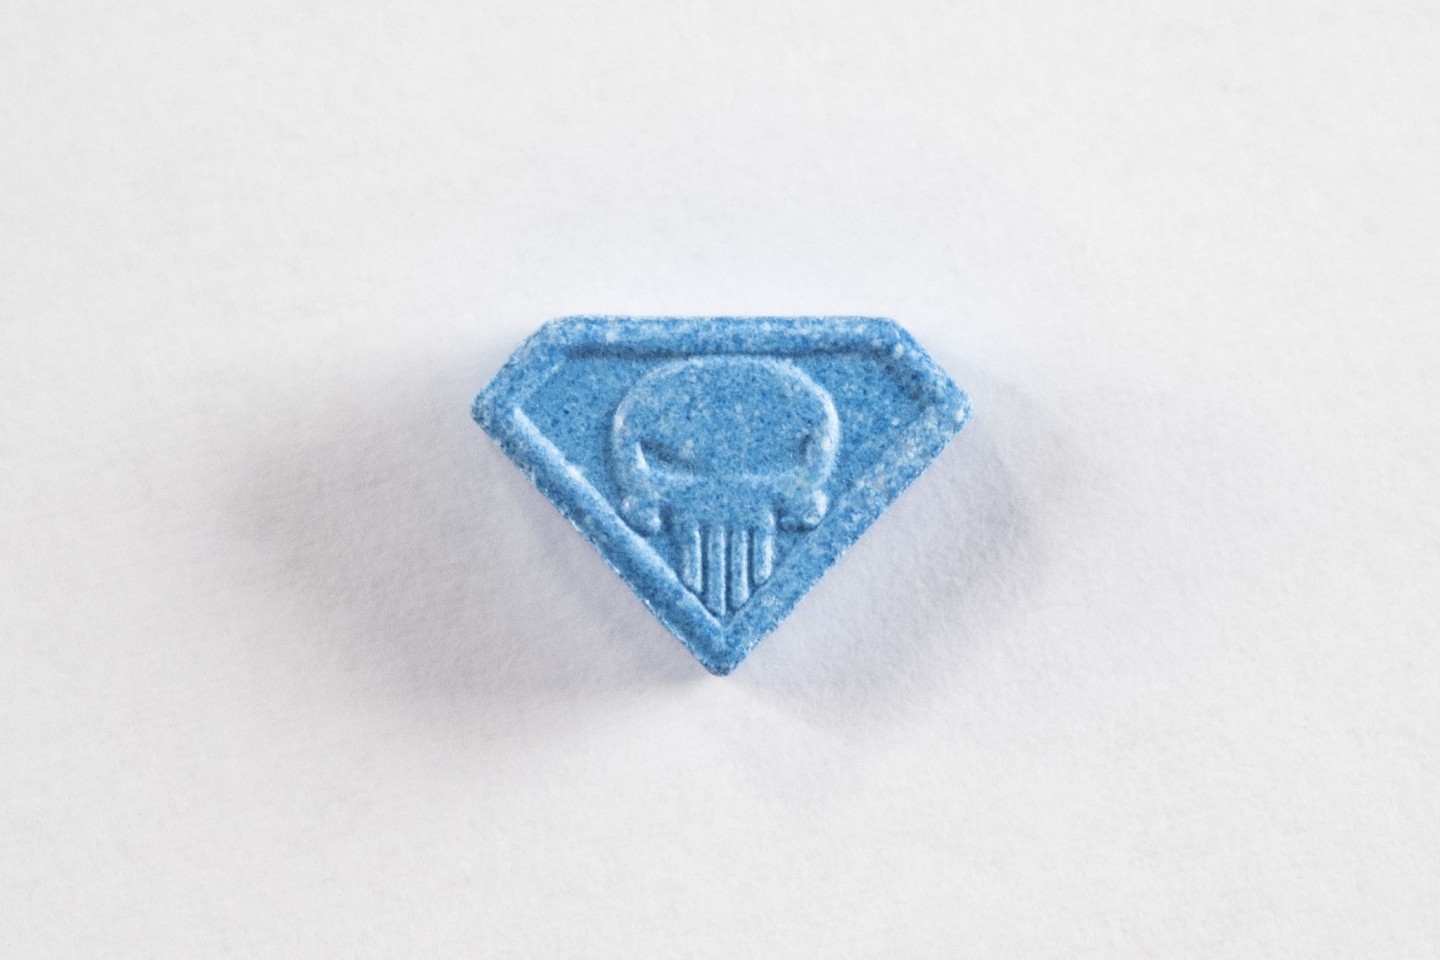 Je nach Herkunft können Ecstasy-Pillen der Variante «Blue Punisher» völlig unterschiedliche Zusammensetzung haben.